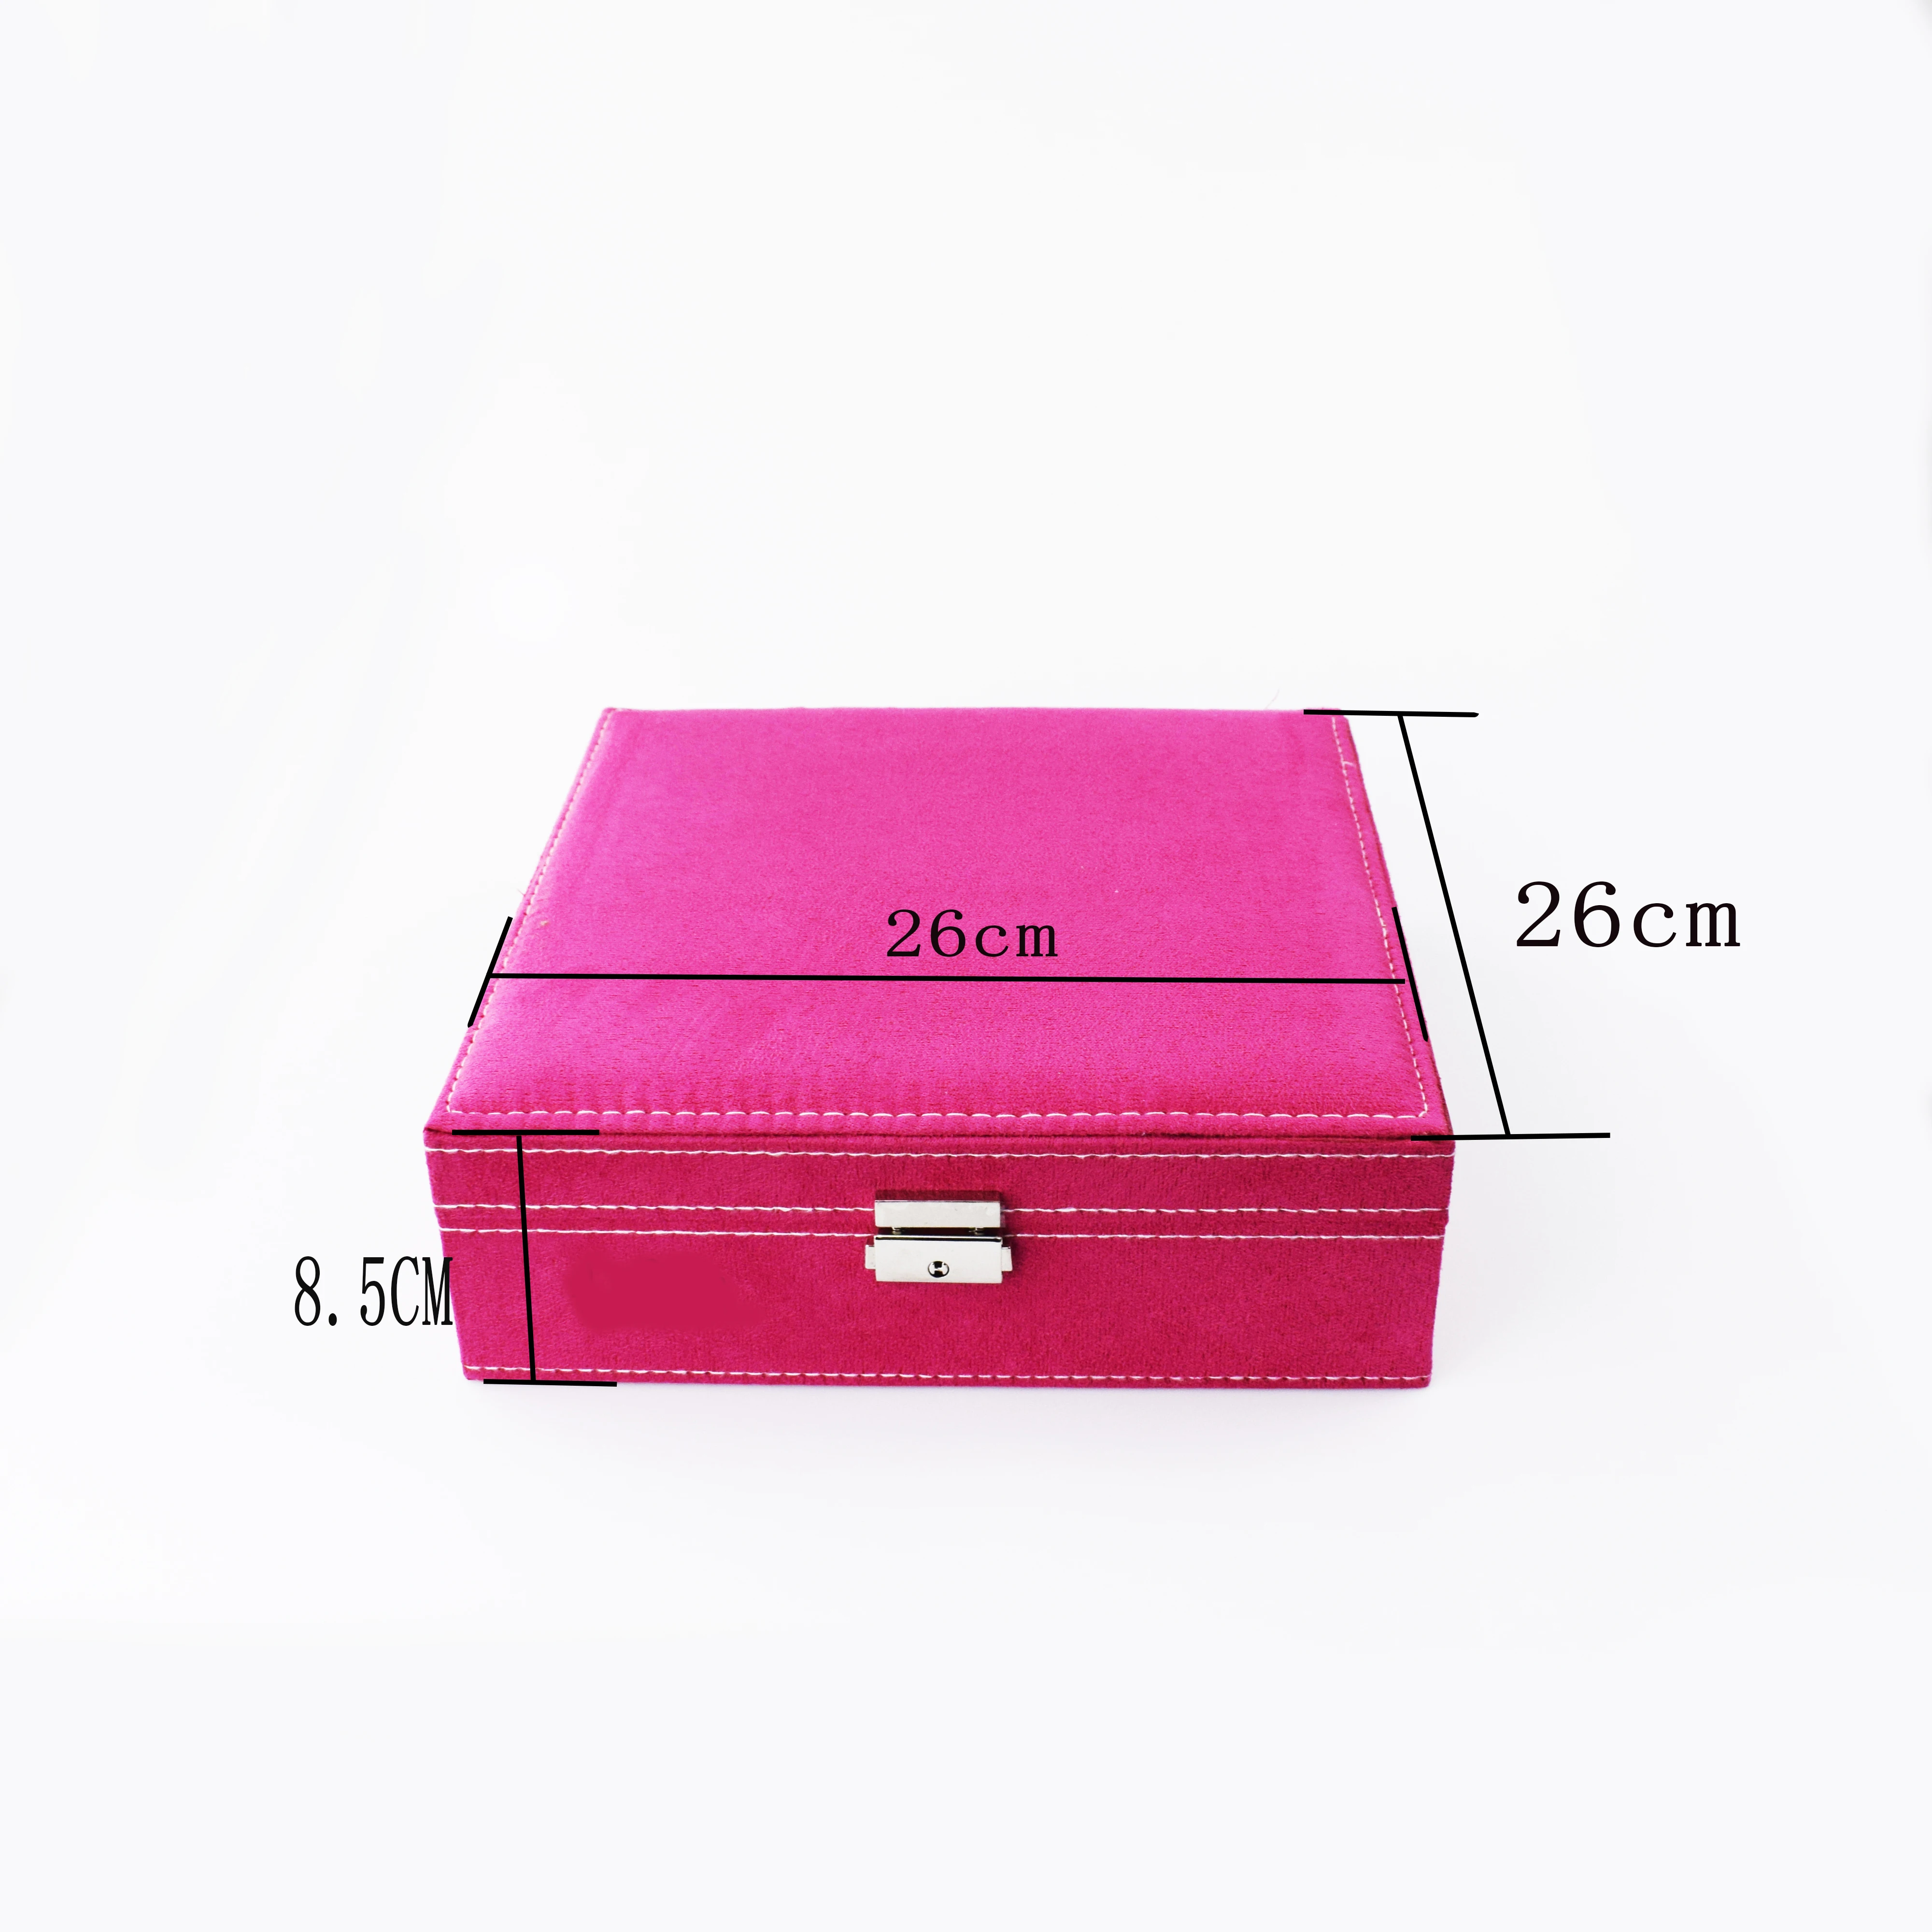 Ярко-розовый двухслойный короб для ювелирных изделий, органайзер, чехол для хранения с замком